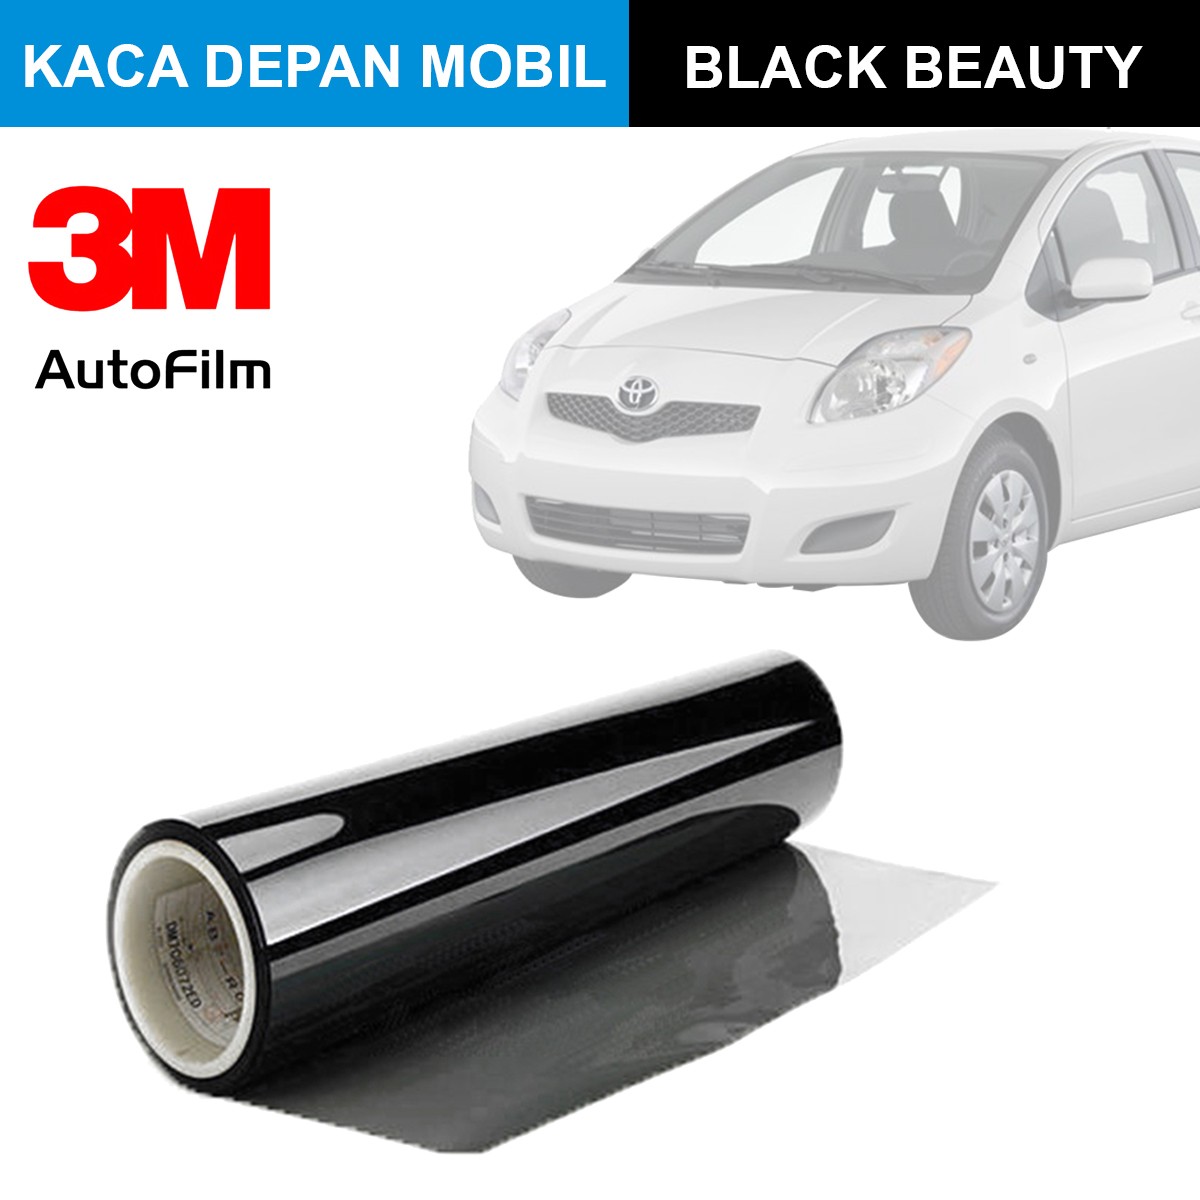 KACA FILM 3M BLACK BEAUTY - (SMALL CAR) FULL KACA